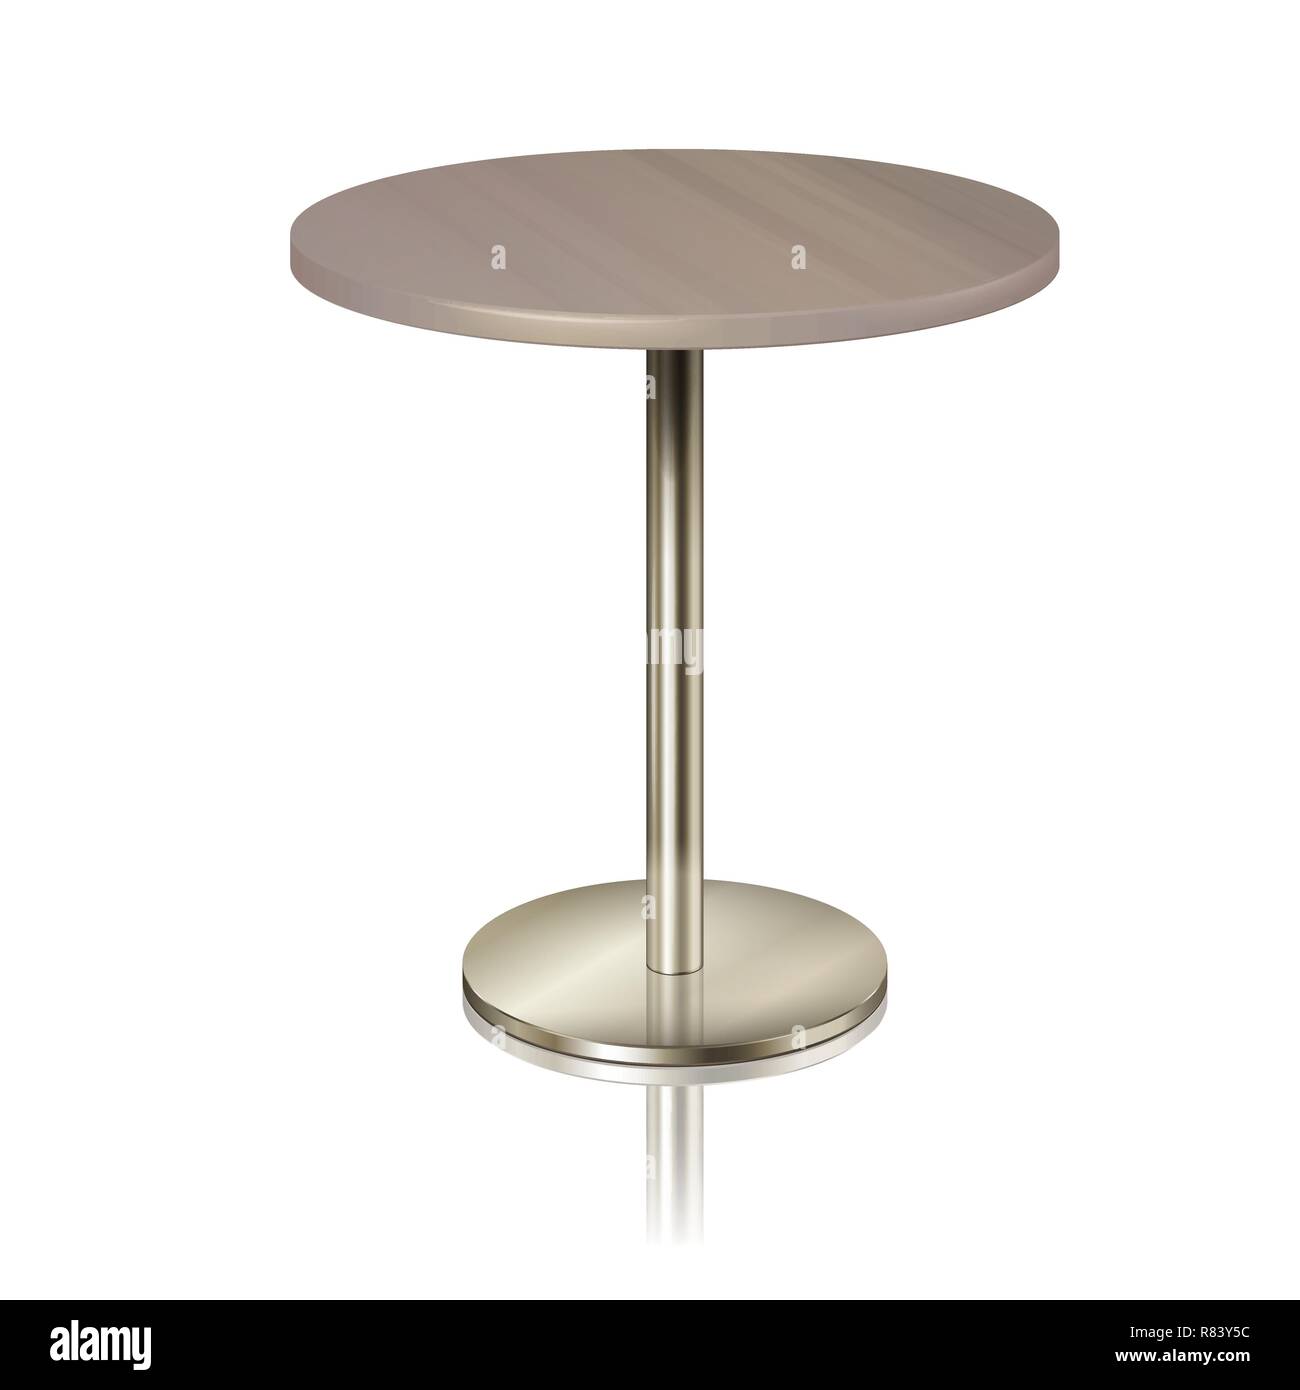 Table ronde sur un support en métal chromé, sans nappe. Des meubles pour un restaurant, café, diner et isolé de l'exposition Illustration de Vecteur